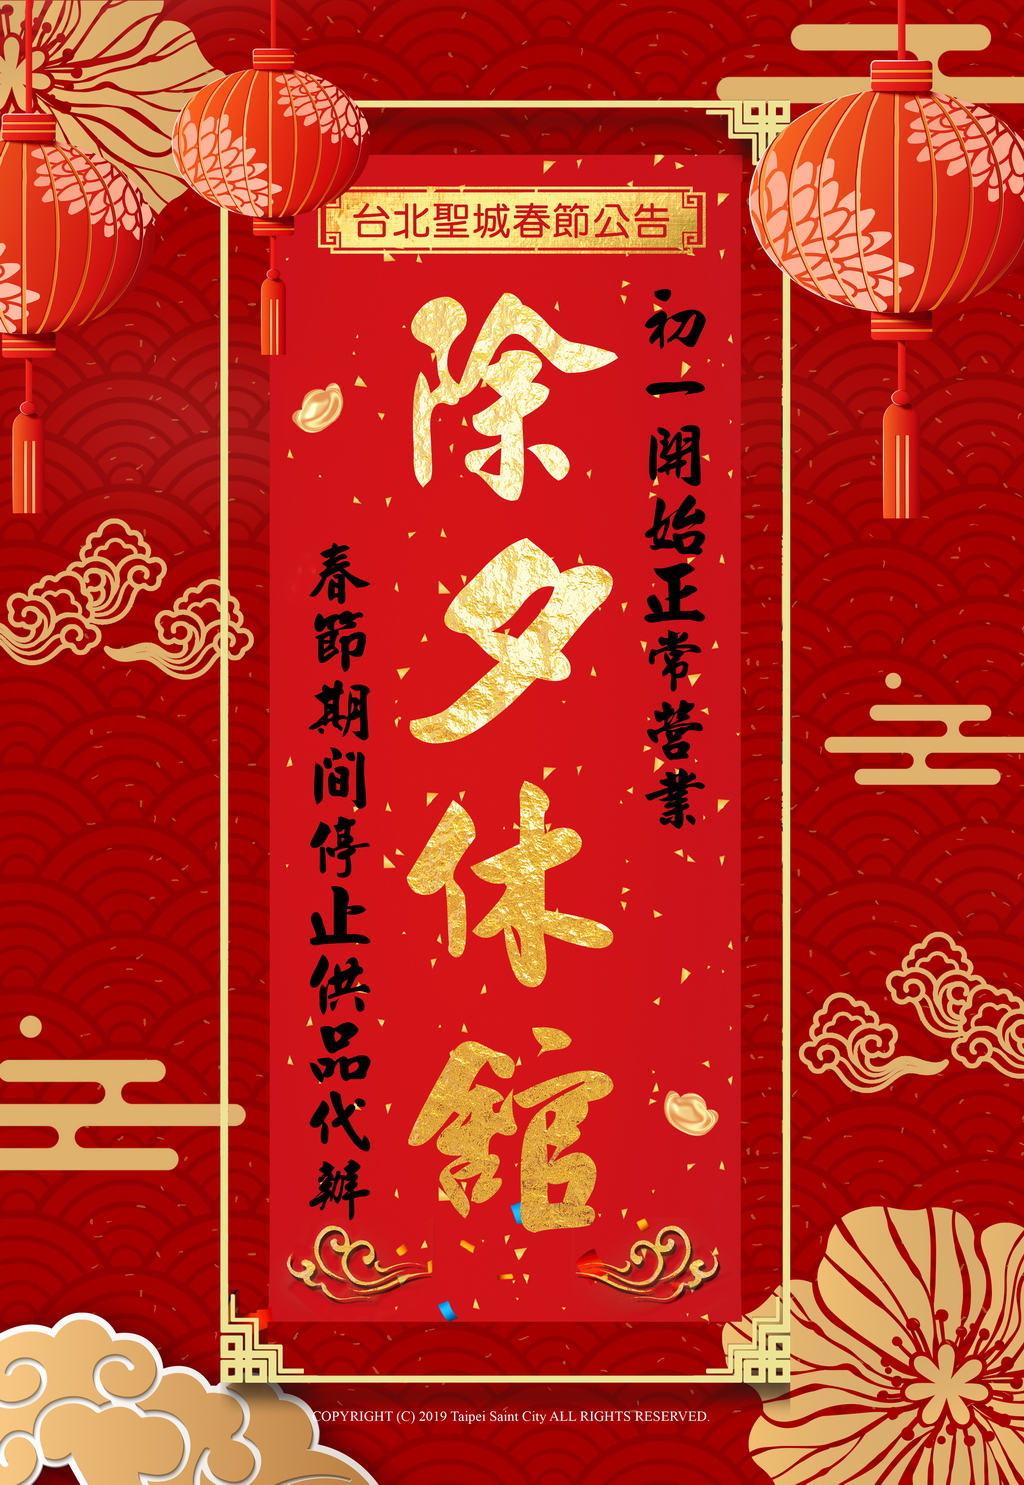 台北聖城農曆春節期間服務公告。